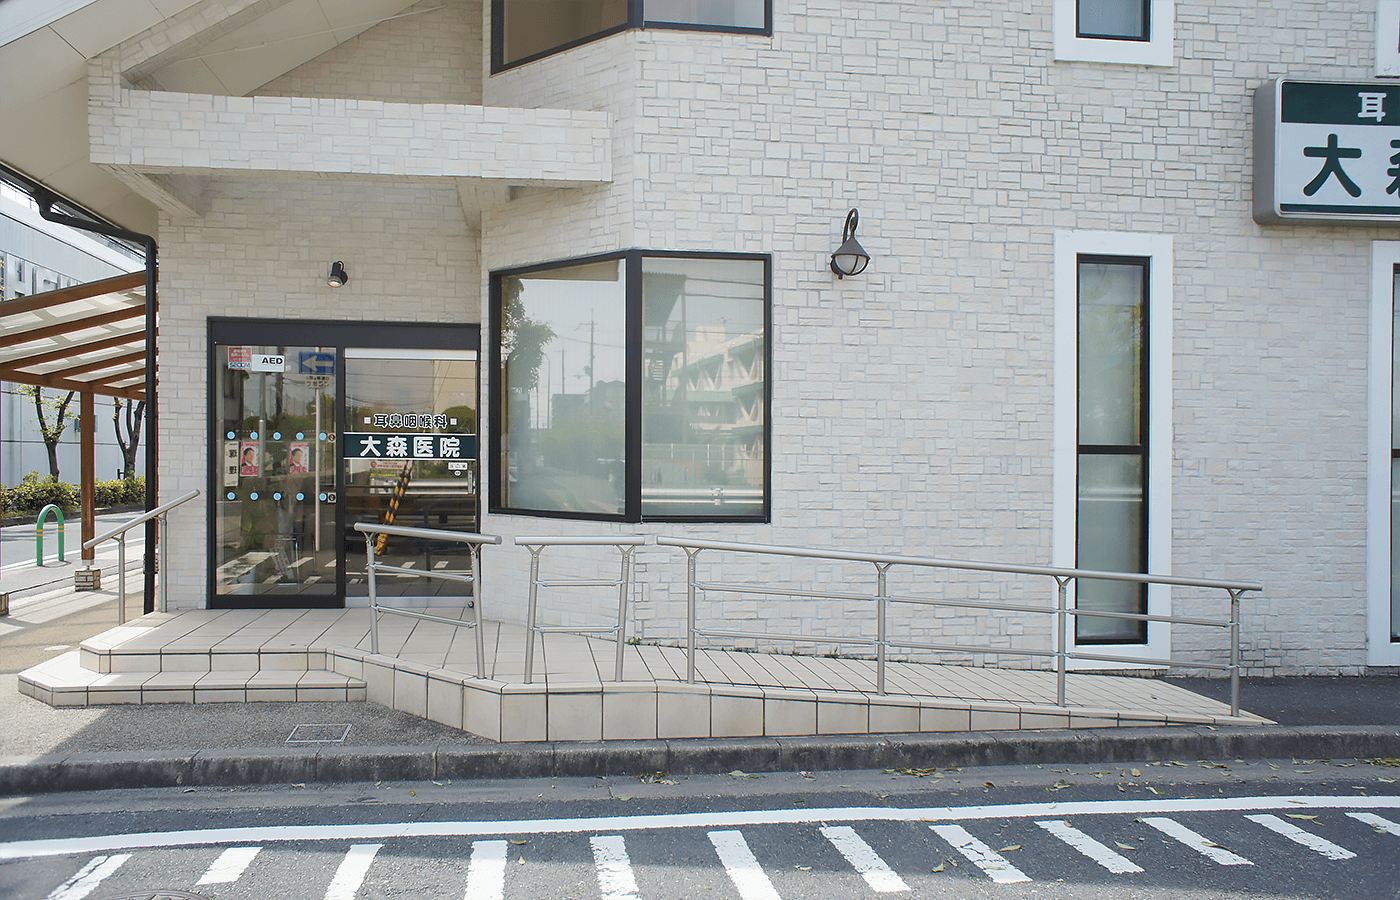 バリアフリー対応の医院入口スロープ